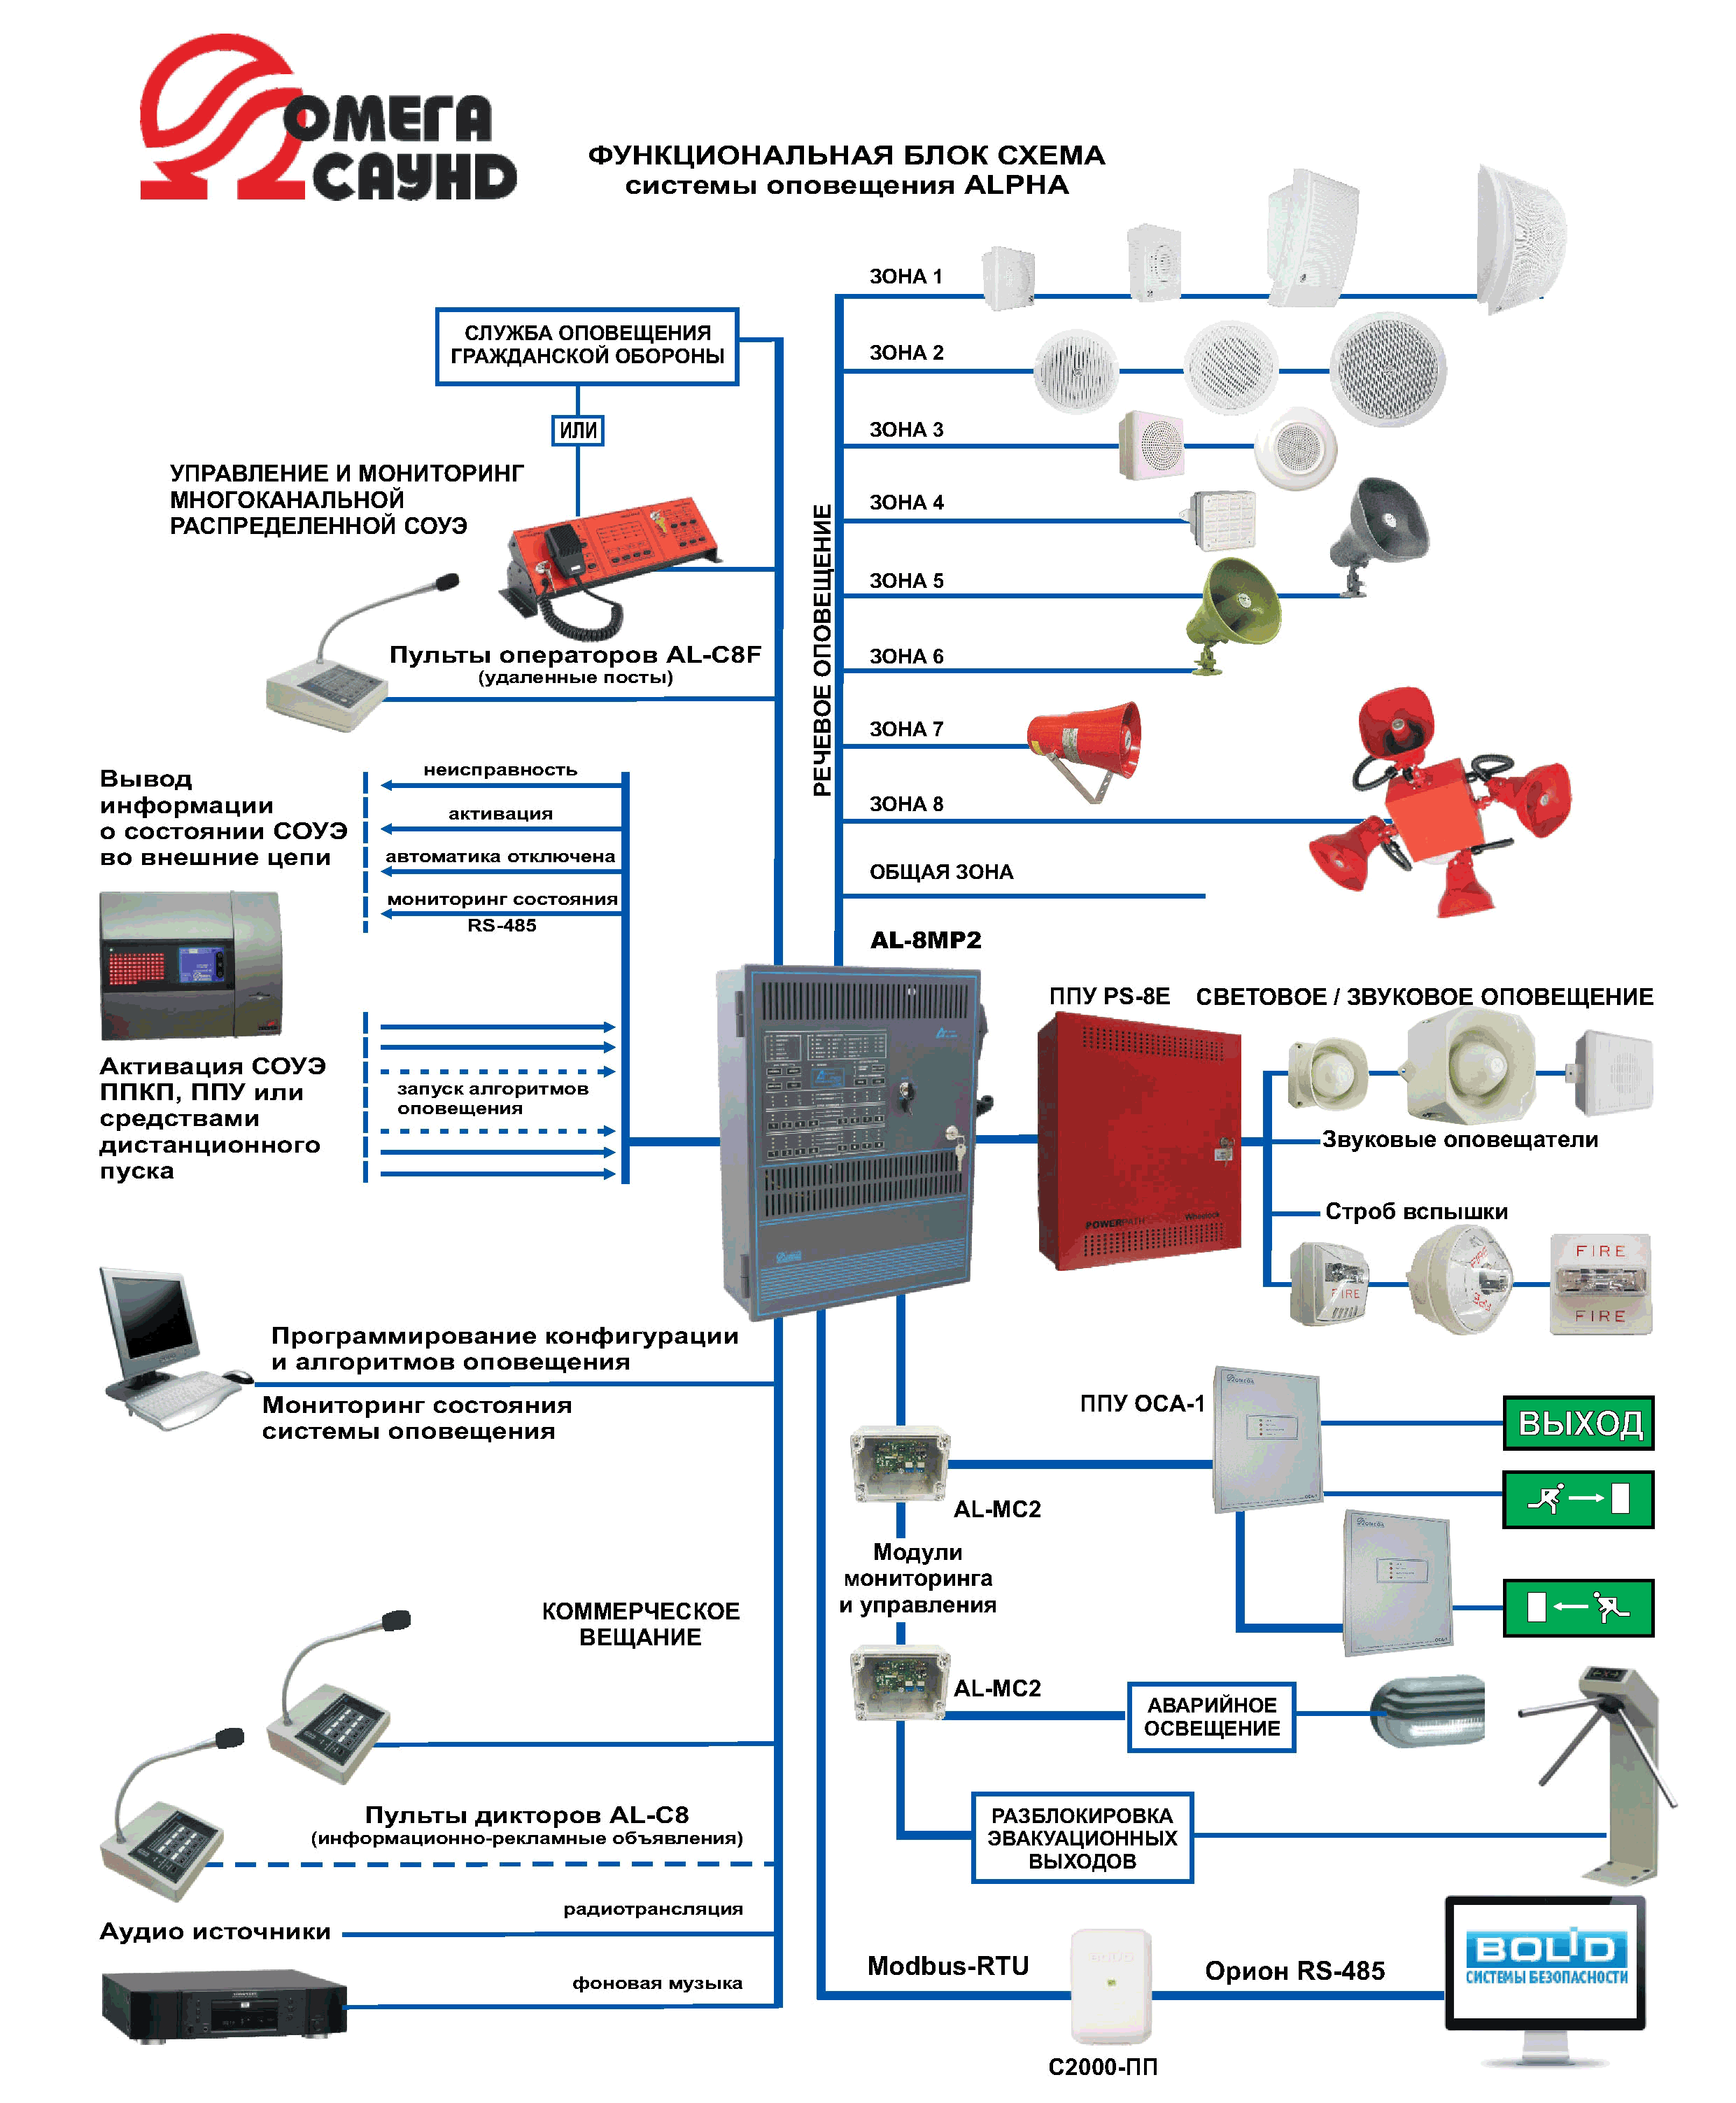 Функциональная схема системы оповещения и управления эвакуации серии Альфа